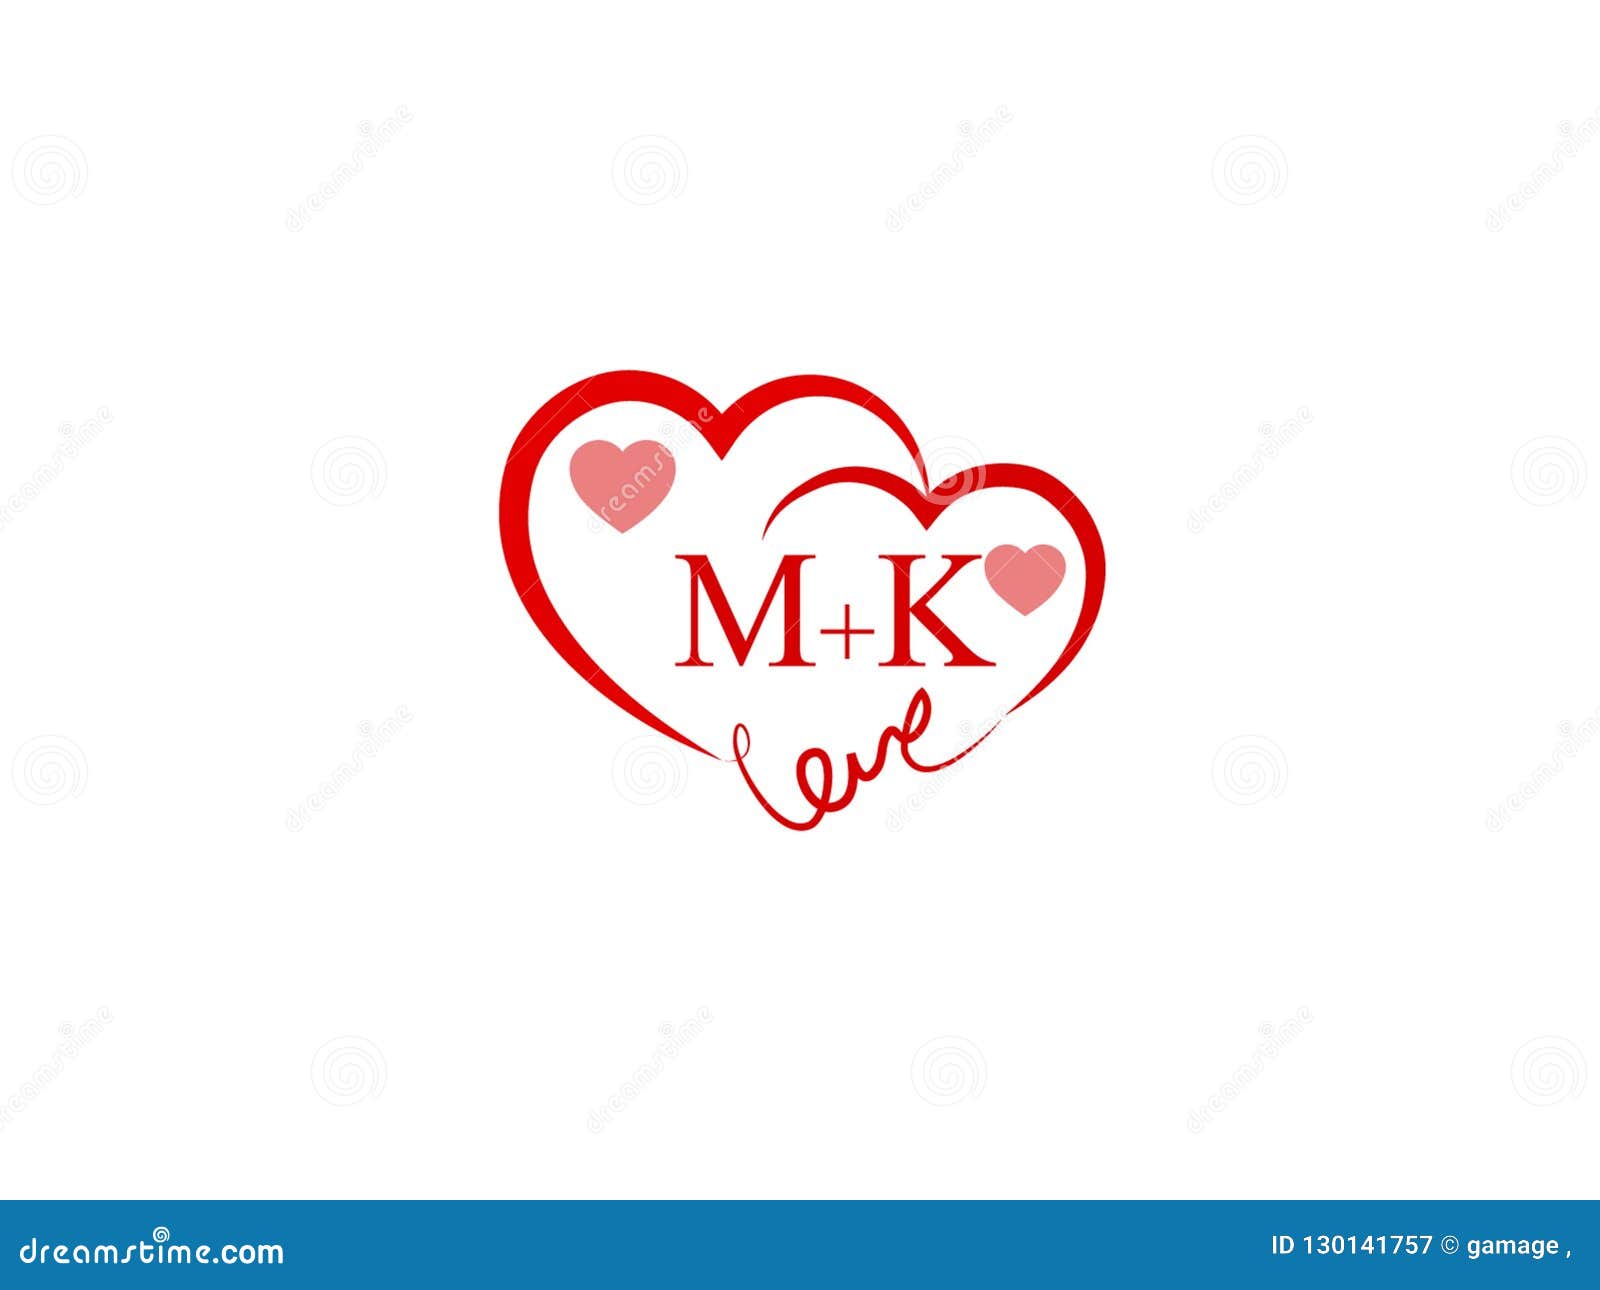 mk MK